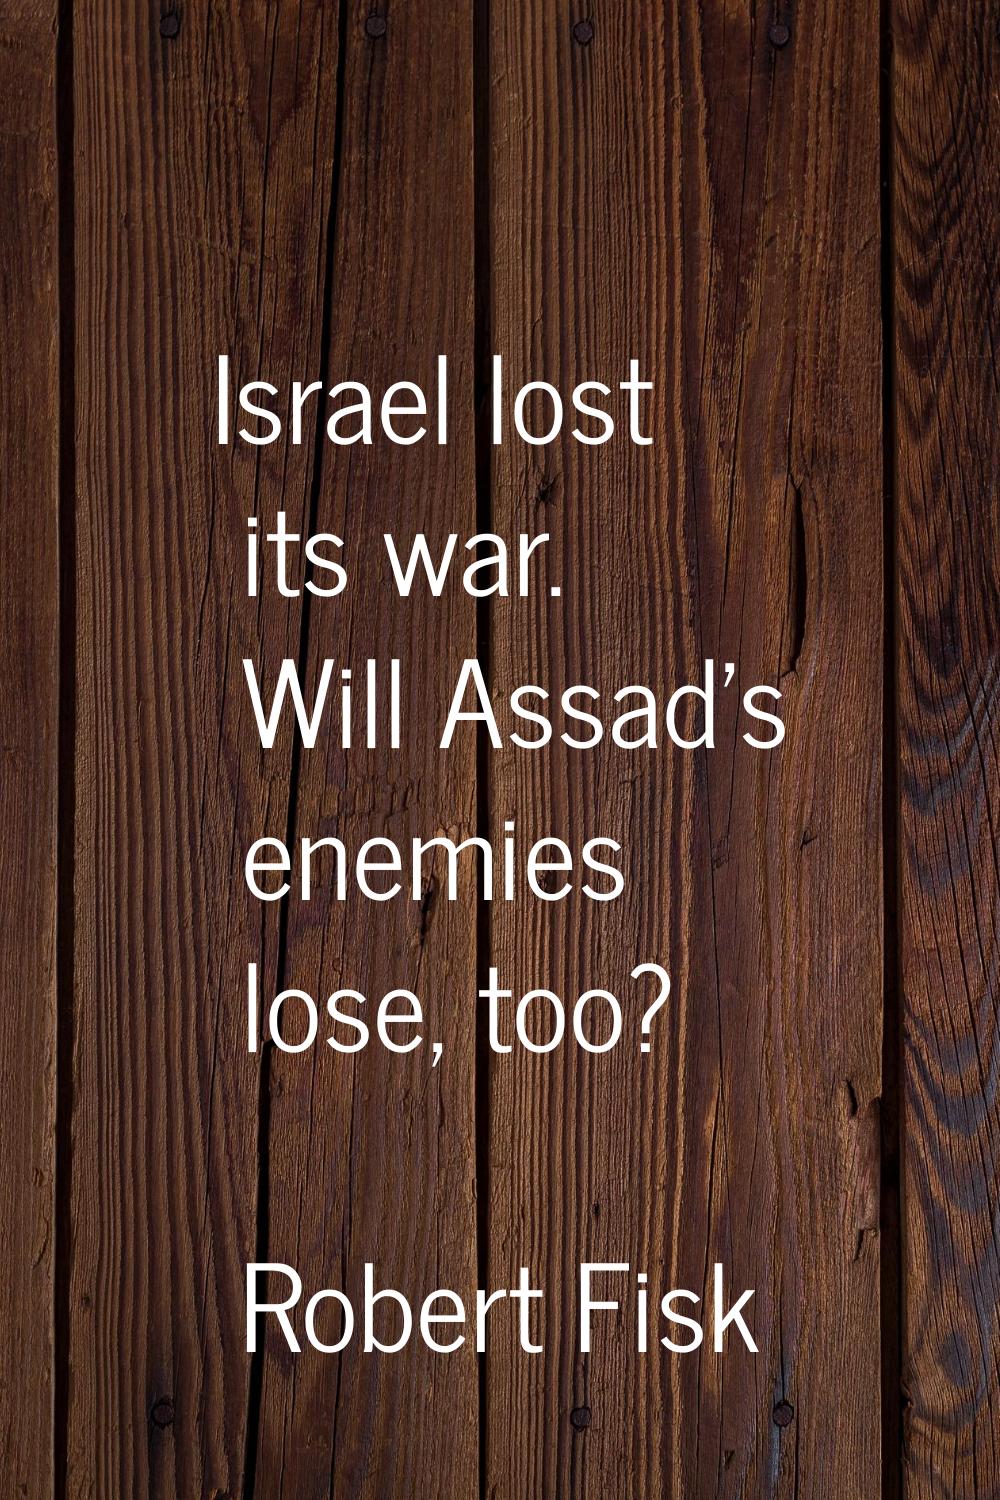 Israel lost its war. Will Assad's enemies lose, too?